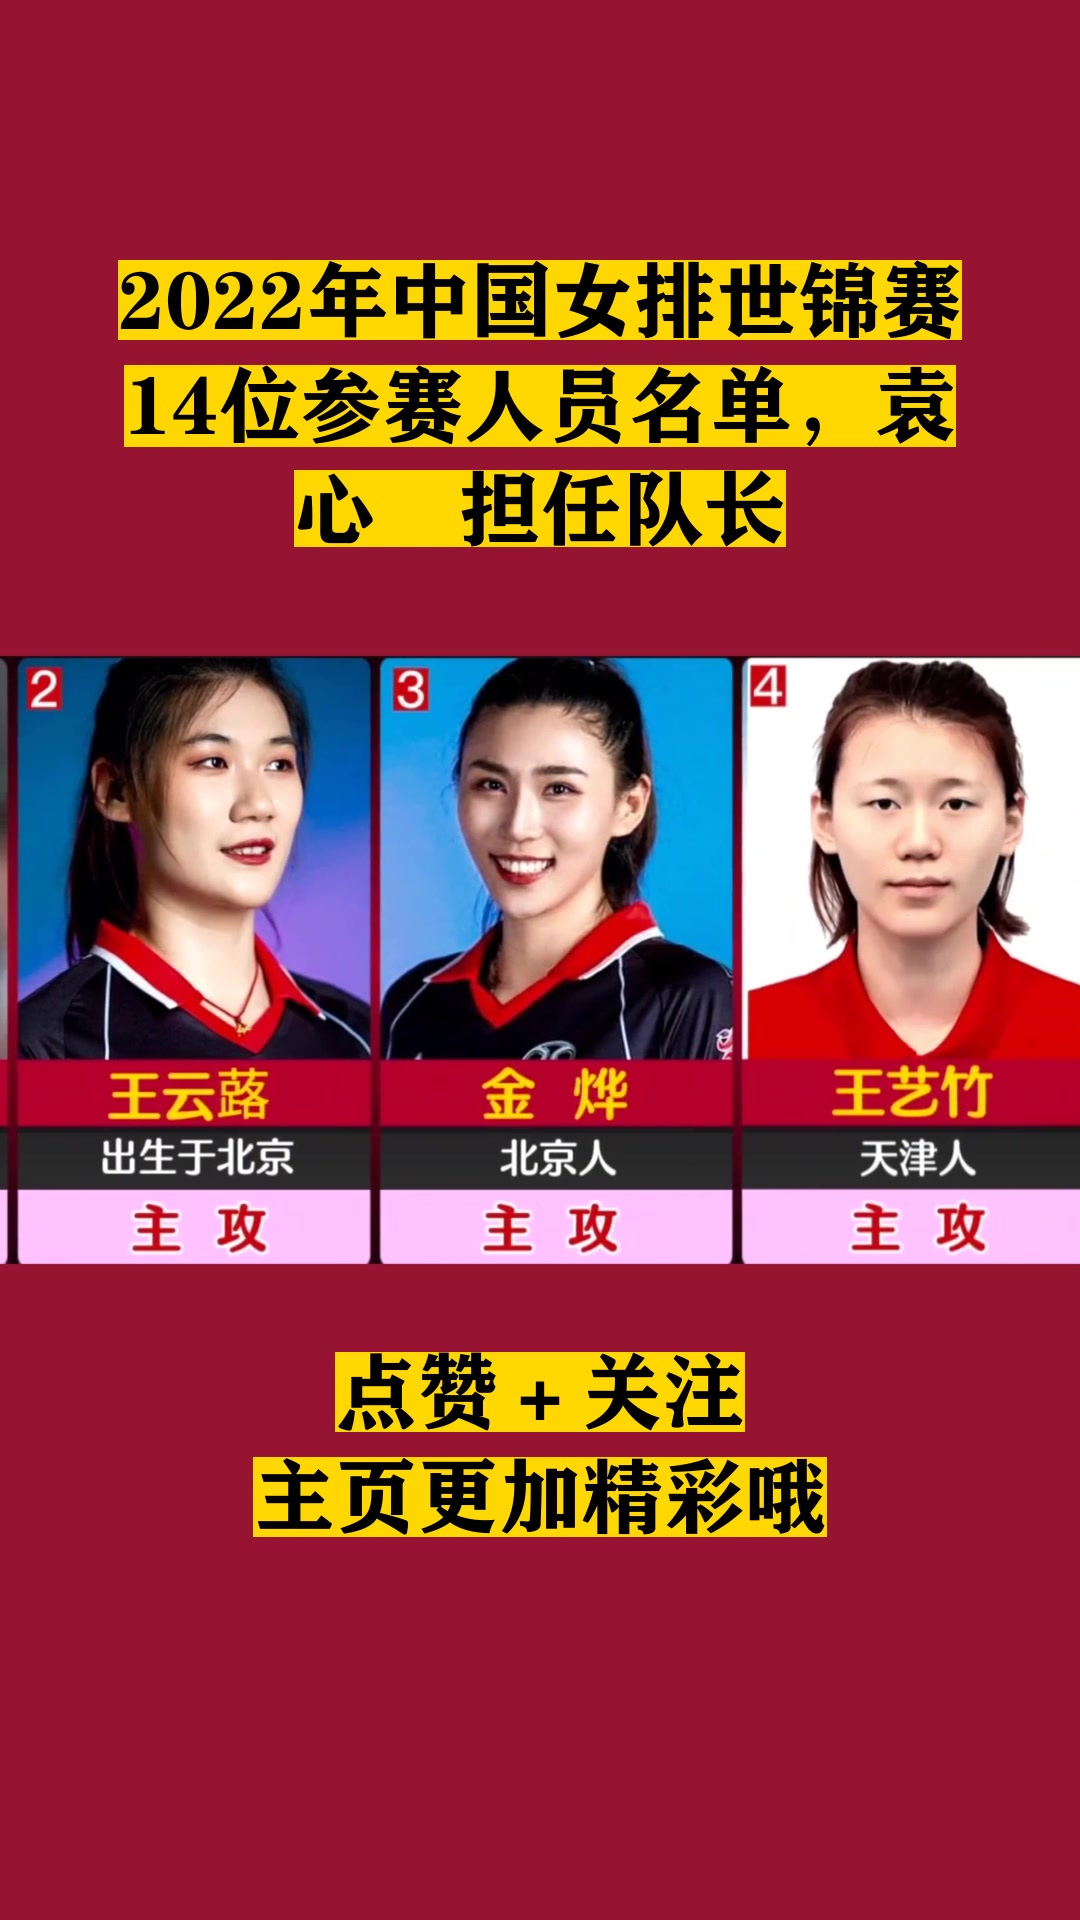 2022年中国女排世锦赛14位参赛人员名单,袁心玥担任队长!